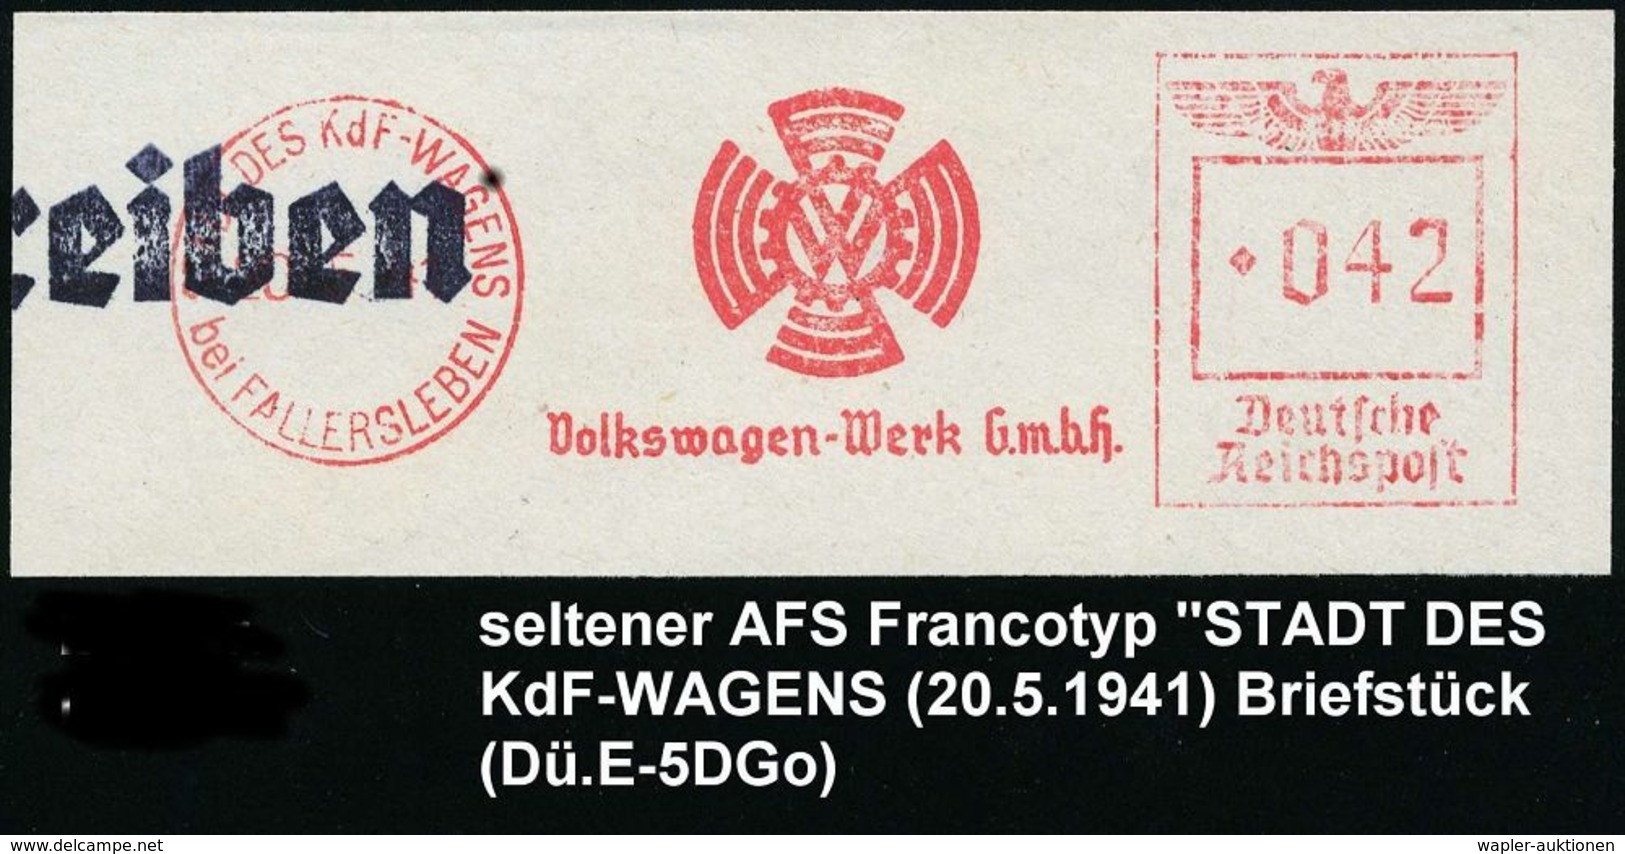 VOLKSWAGEN / VW / K.-D.-F.-WAGEN / PORSCHE : STADT DES KdF-WAGENS/ Bei FALLERSLEBEN/ VW/ Volkswagen-Werk GmbH 1941 (19.8 - Automobili